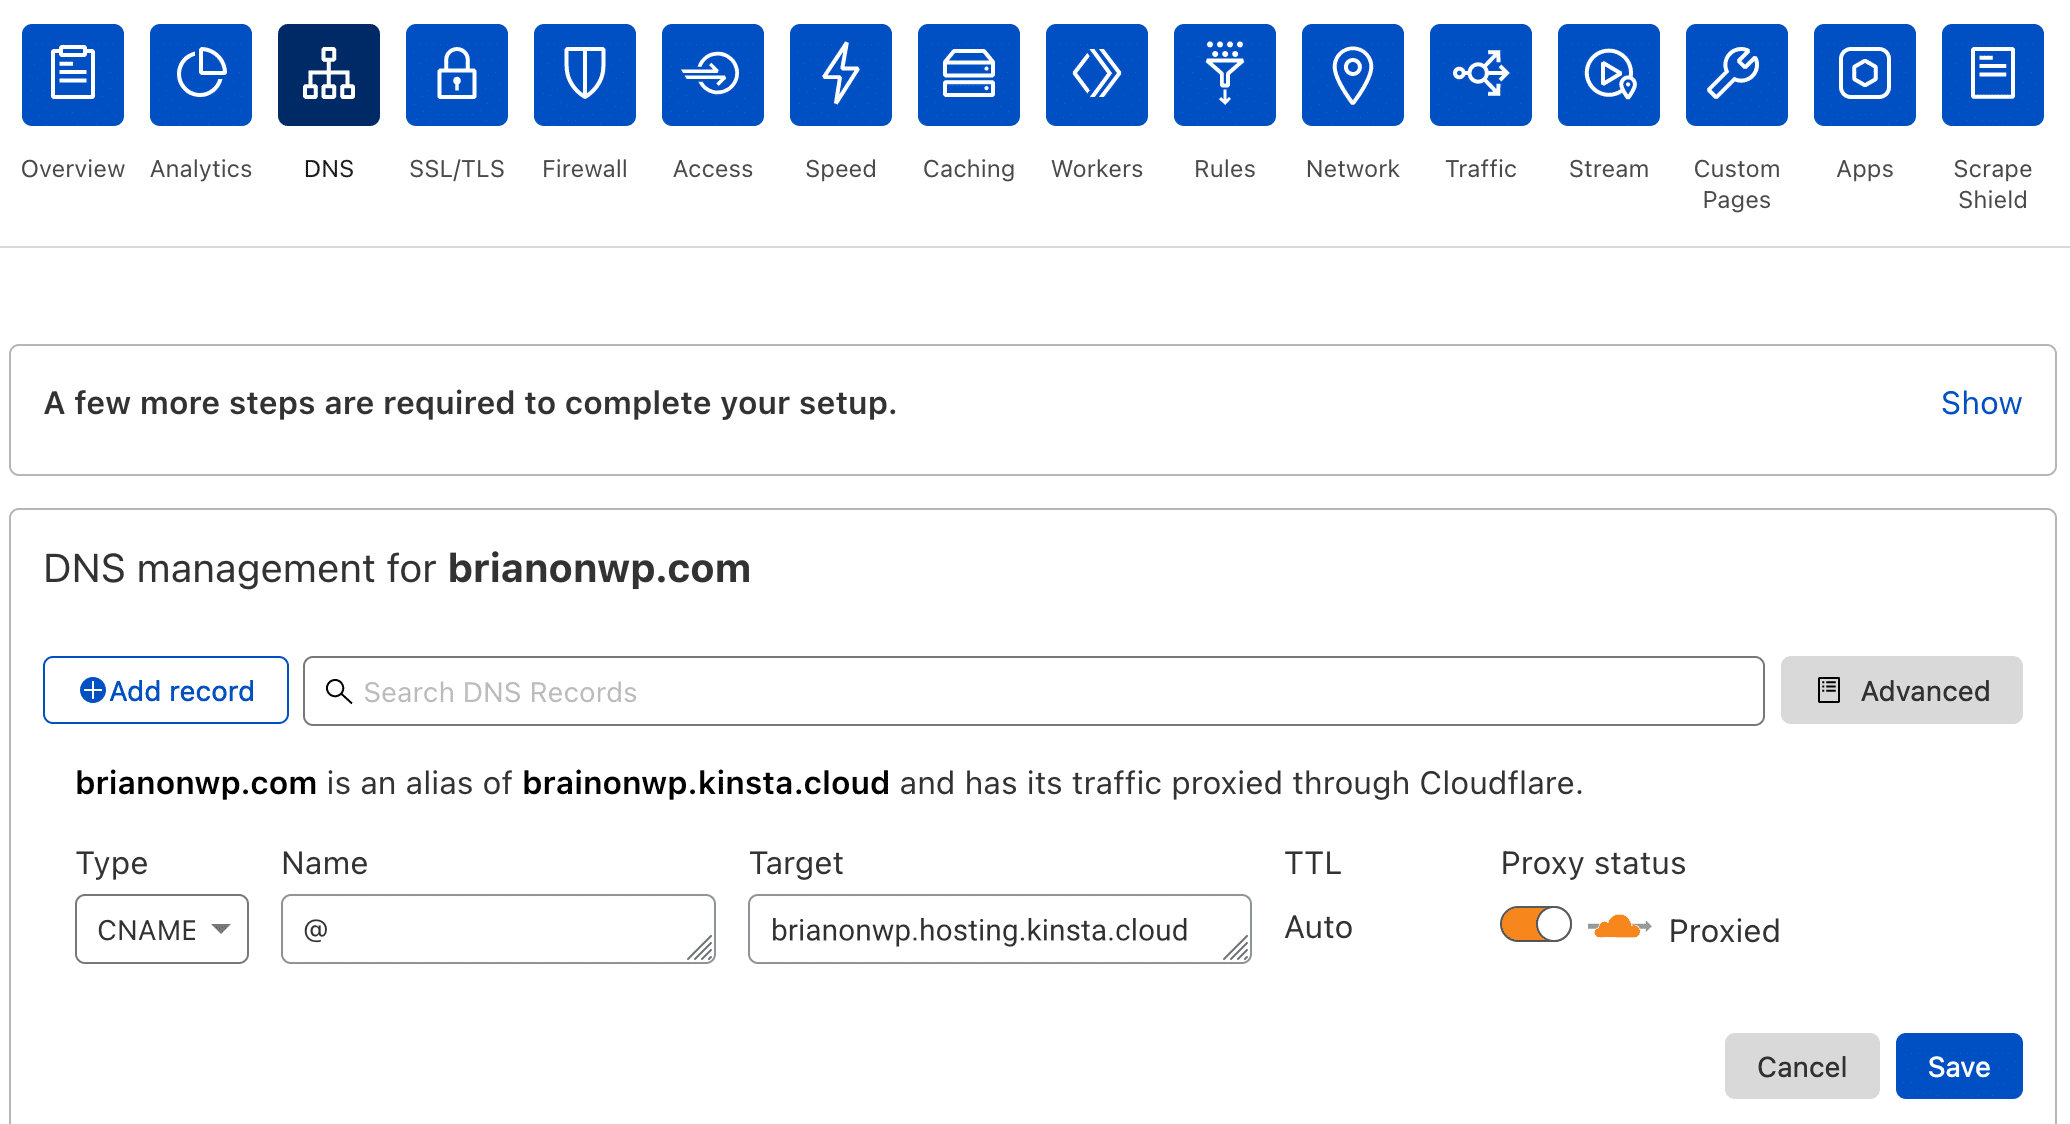 Adicione um CNAME para seu domínio raiz no Cloudflare.